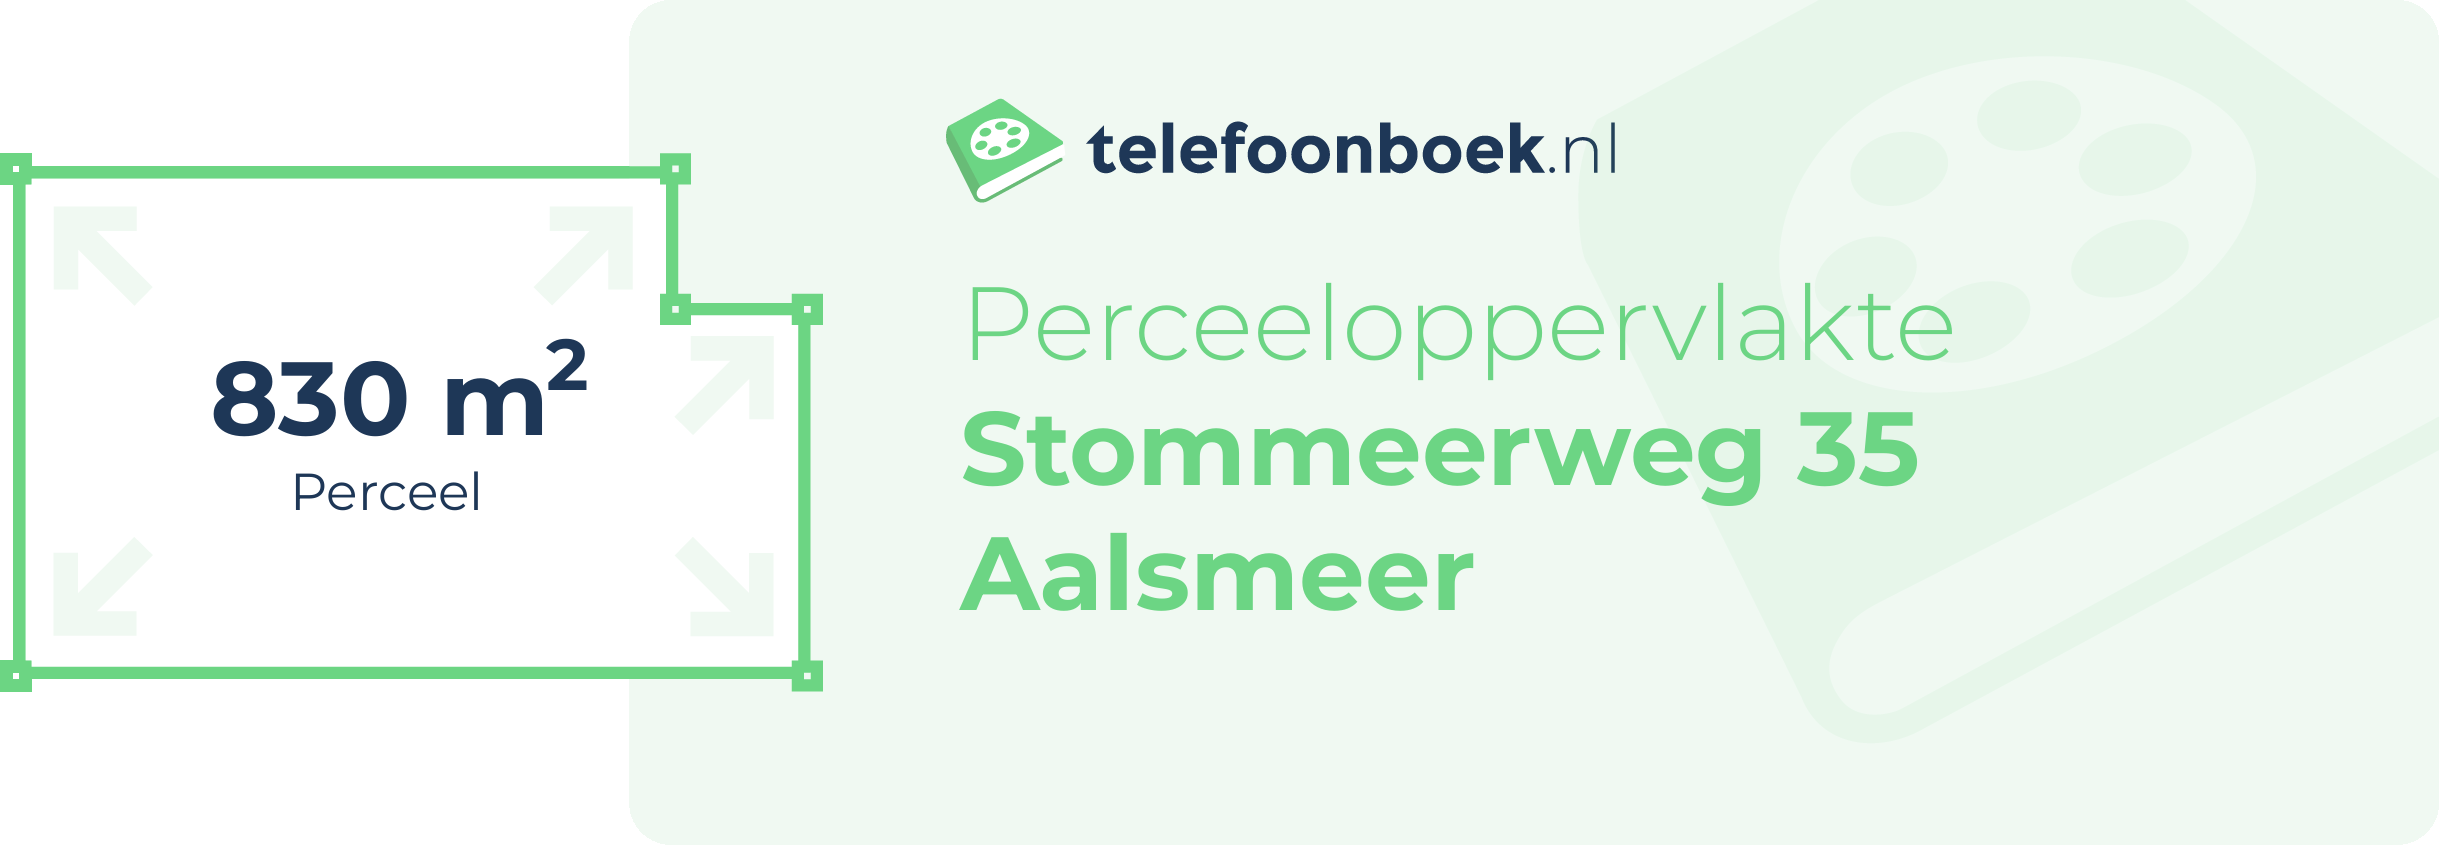 Perceeloppervlakte Stommeerweg 35 Aalsmeer